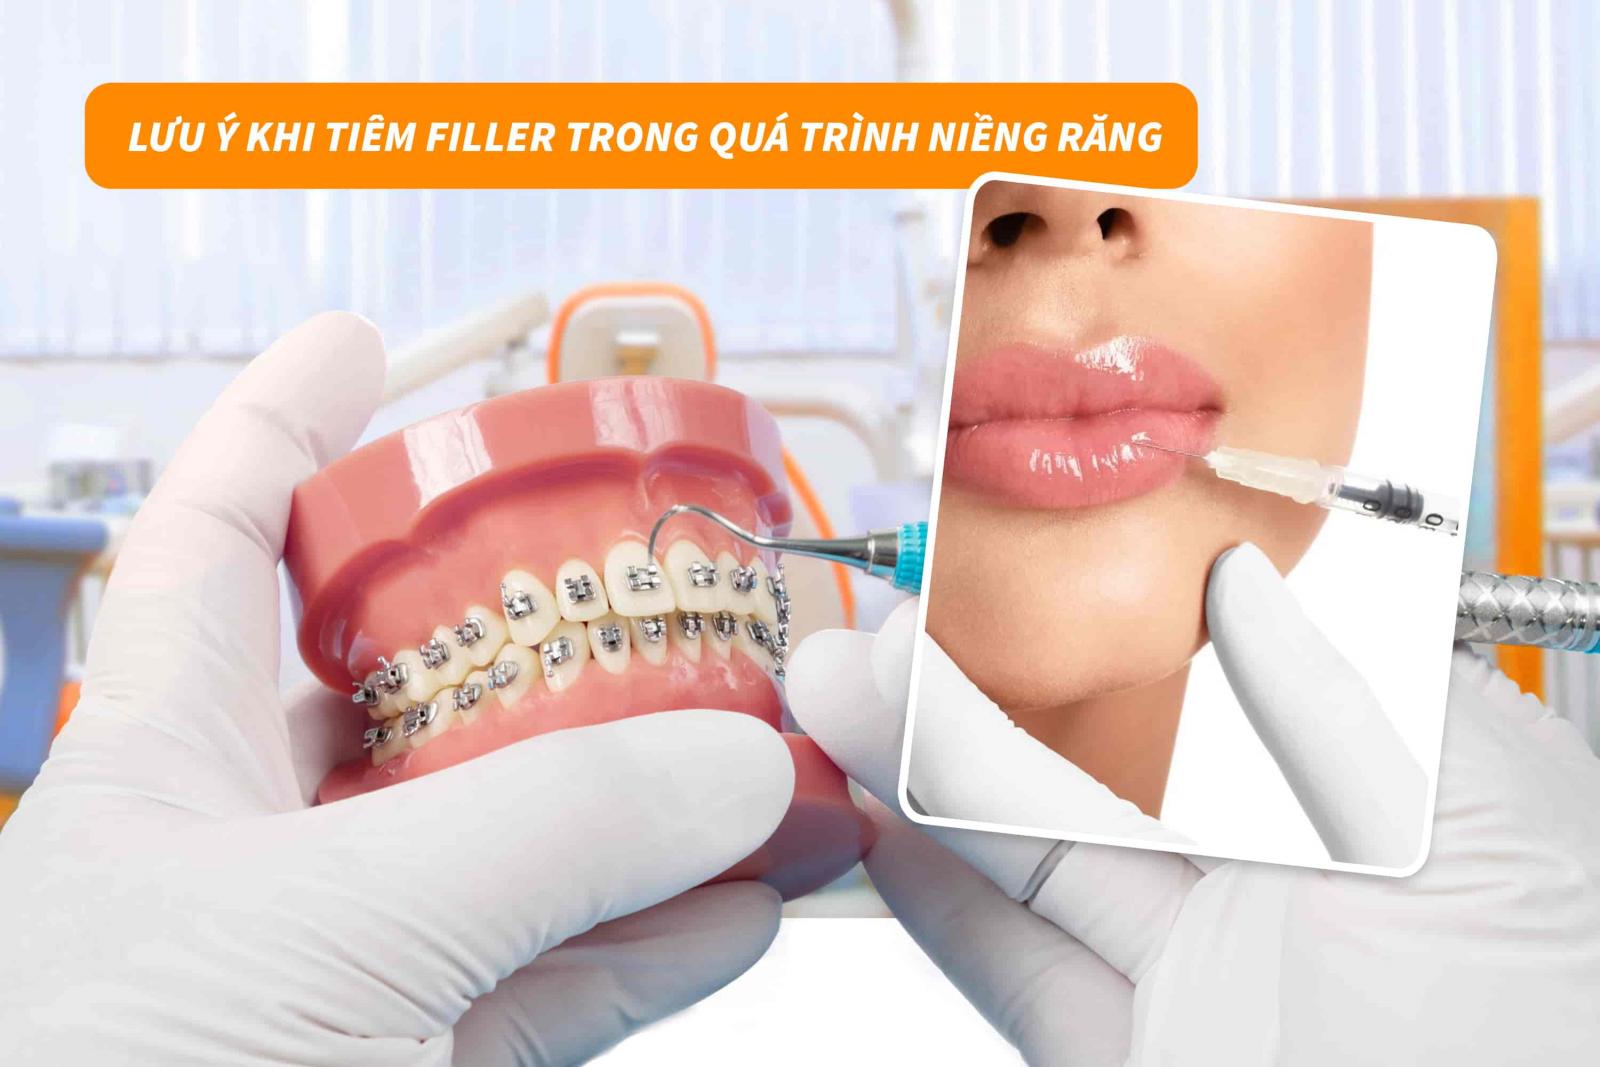 Lưu ý khi tiêm filler trong quá trình niềng răng